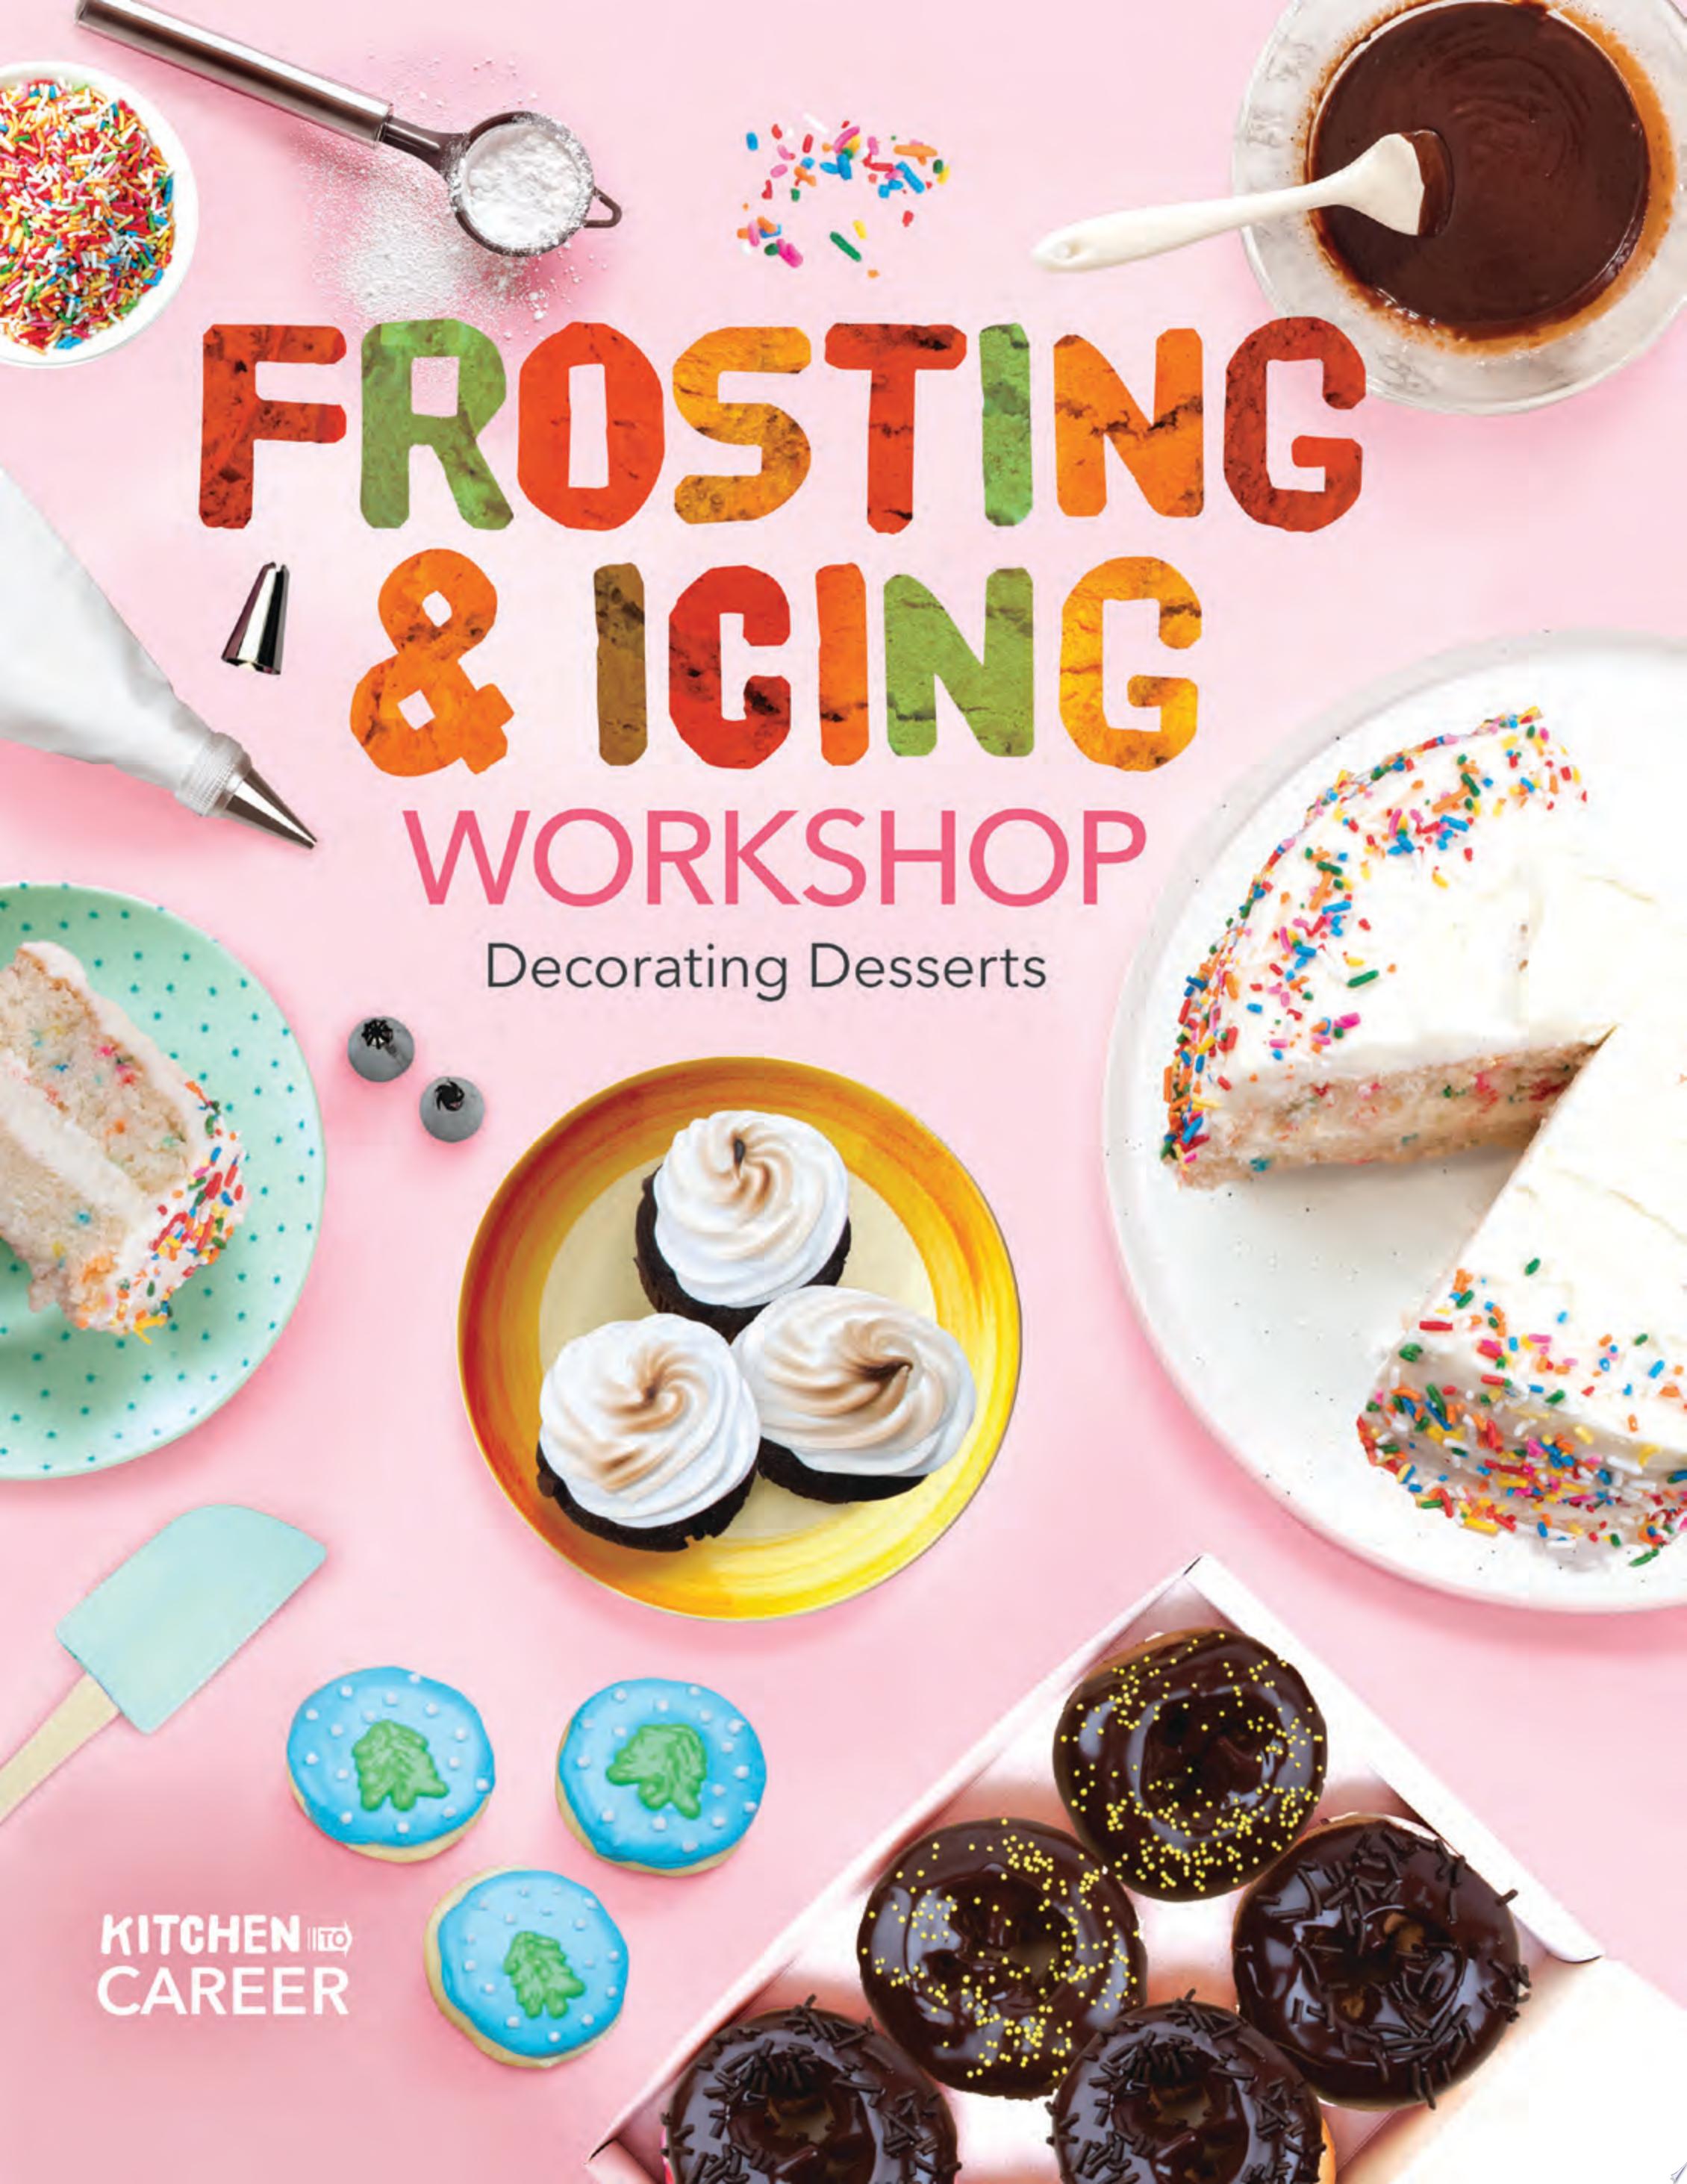 Image for "Frosting &amp; Icing Workshop: Decorating Desserts"